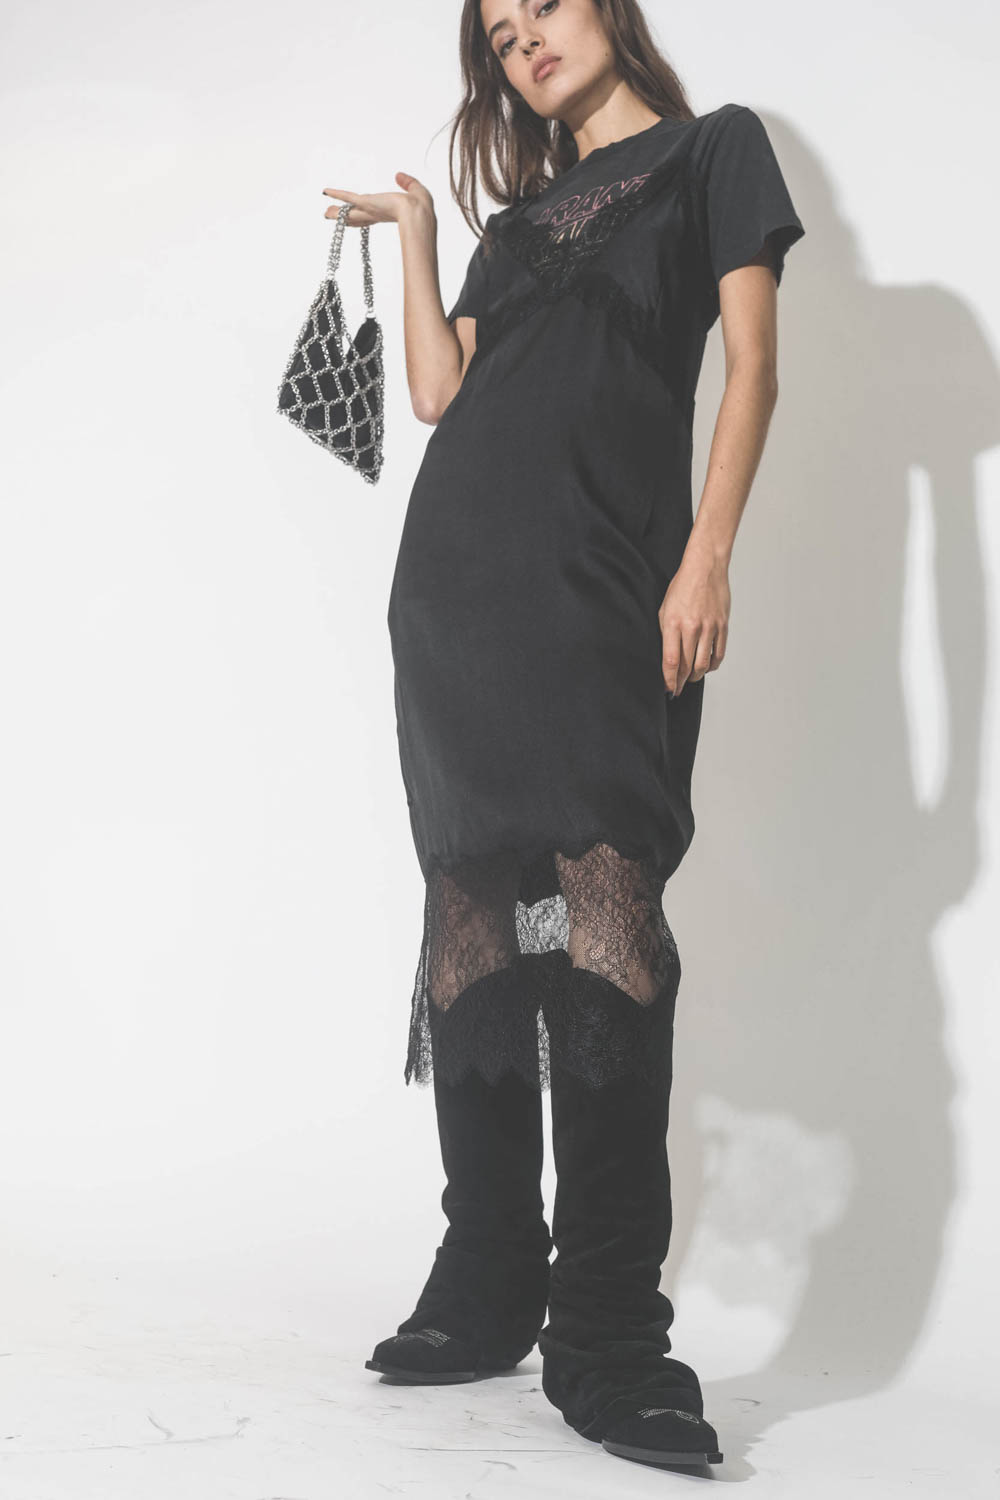 Robe fines bretelles en soie et dentelle noire Amélie Anine Bing. Porté avec des bottes santiags noires.